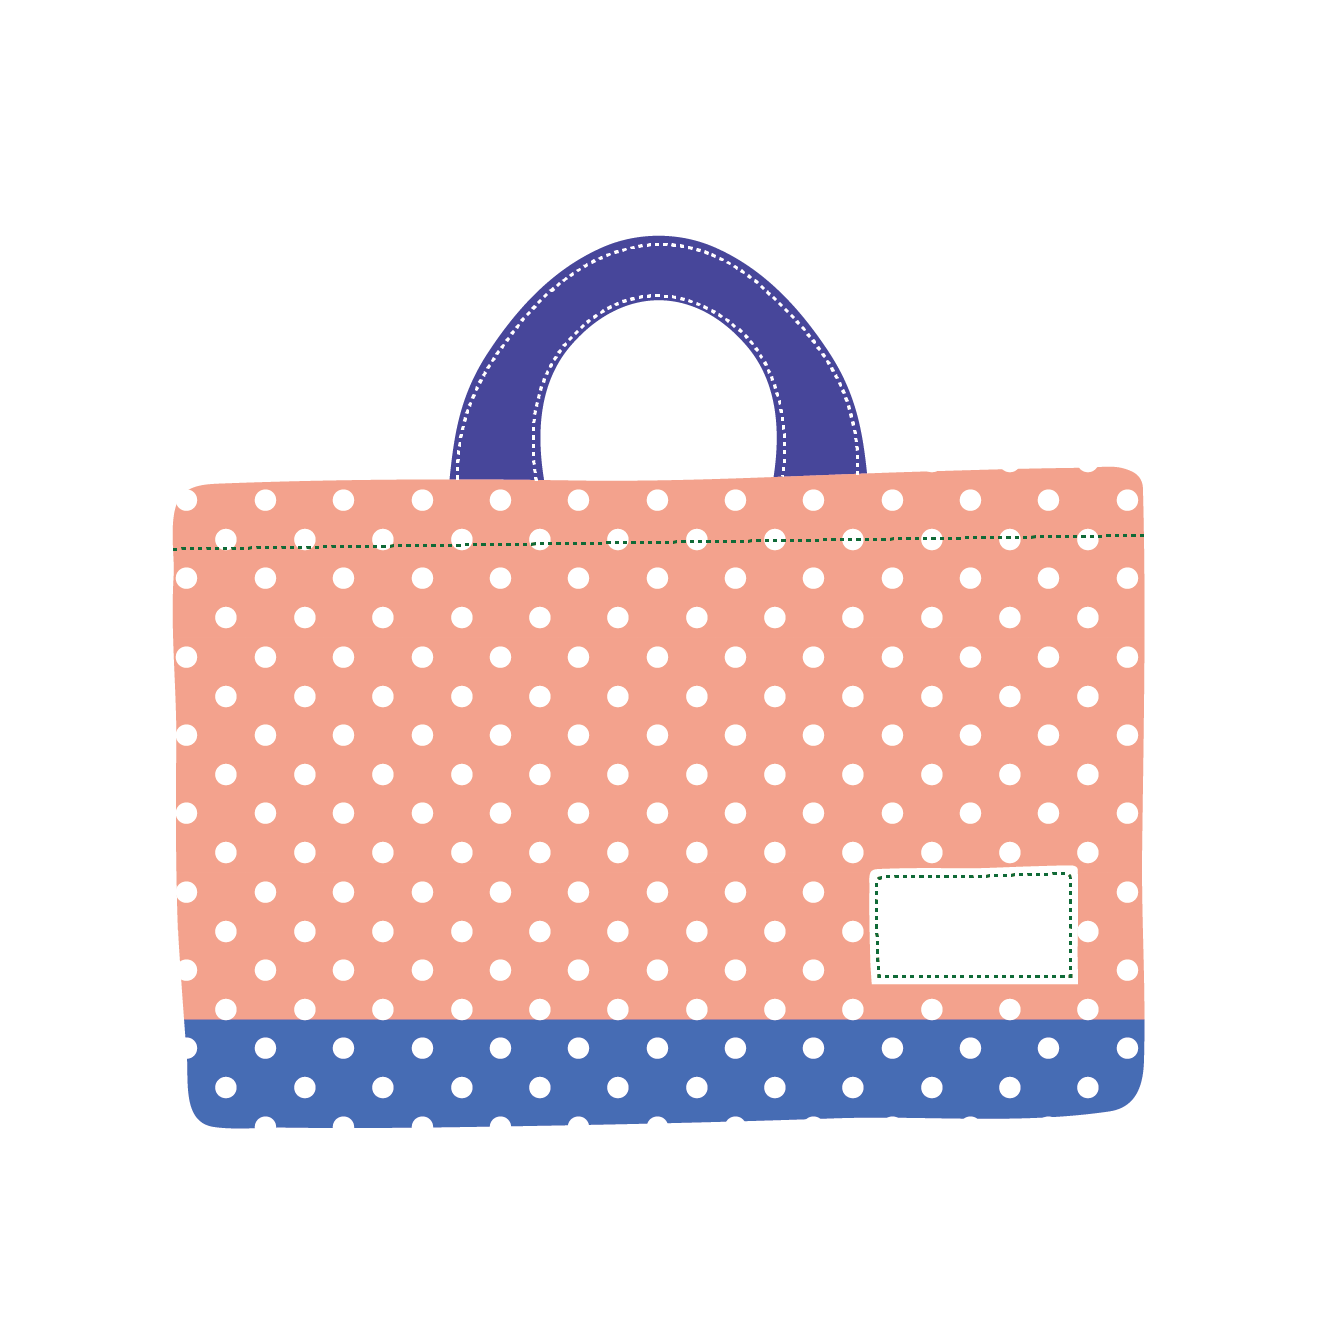 かわいい手提げ袋 カバン バッグ の 無料 イラスト 商用フリー 無料 のイラスト素材なら イラストマンション